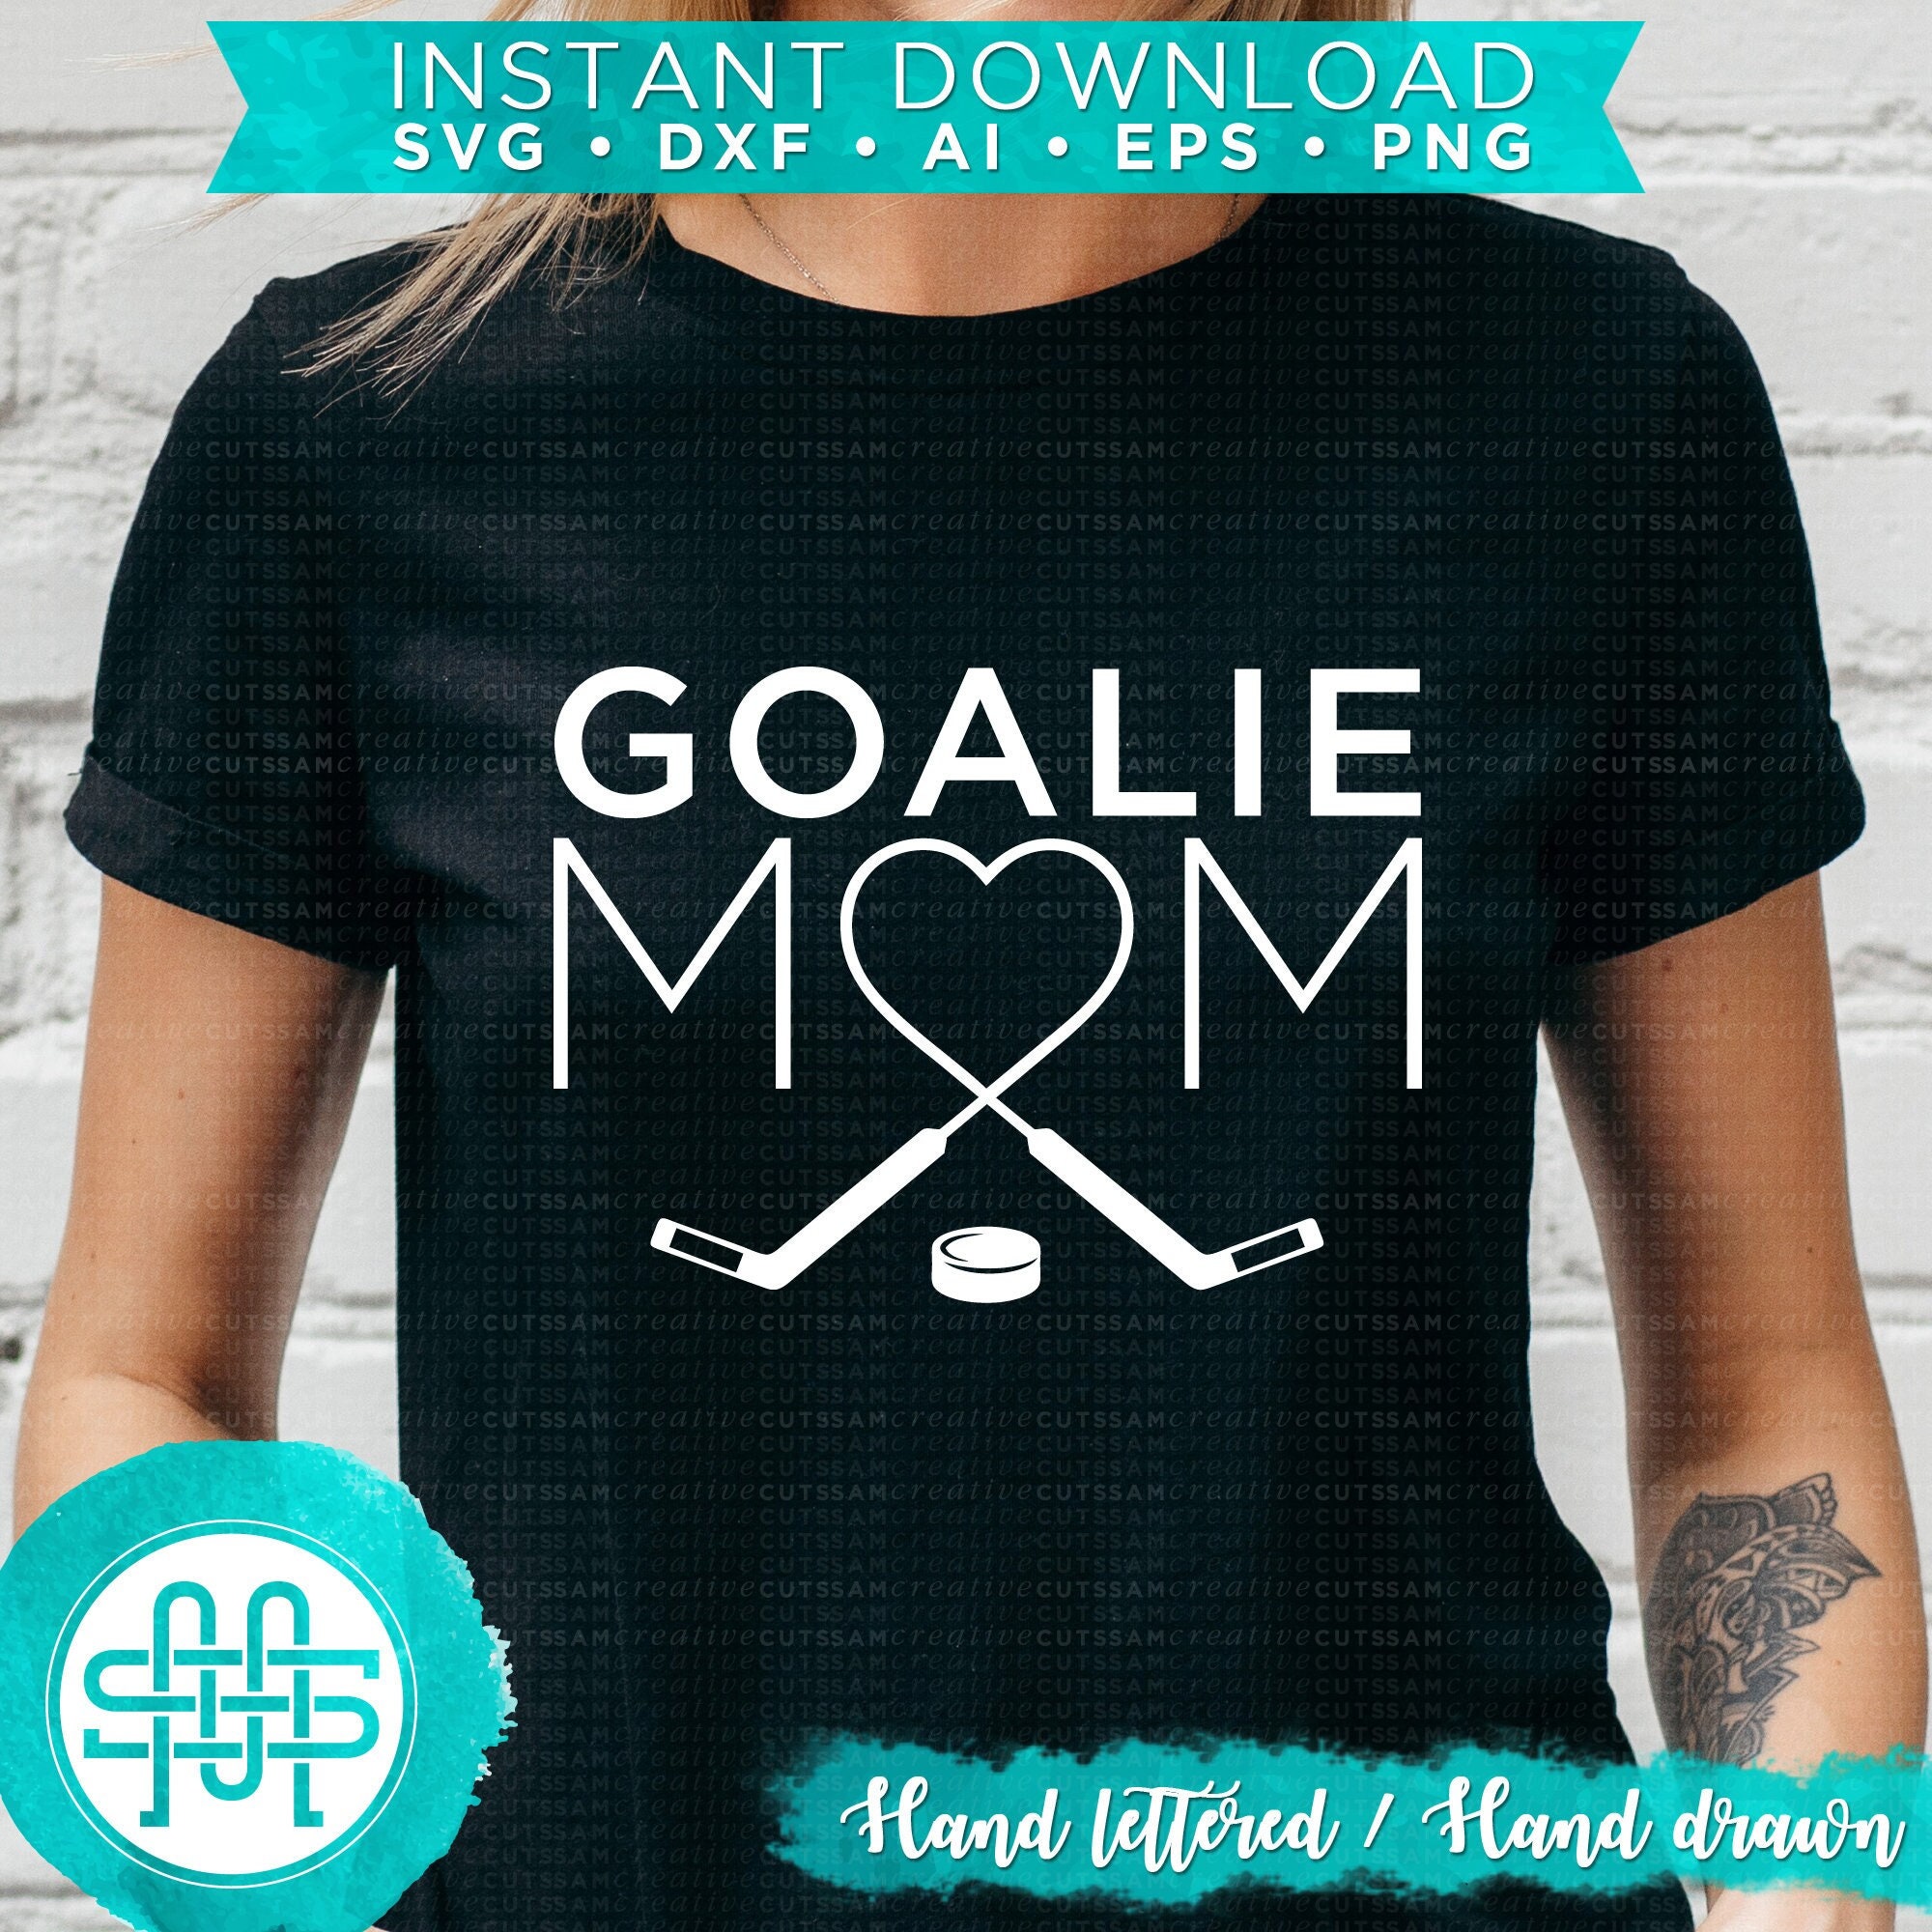 ULTRABASIC Women's T-Shirt Goalie Mom - Hockey Funny Tee Shirt for Mother